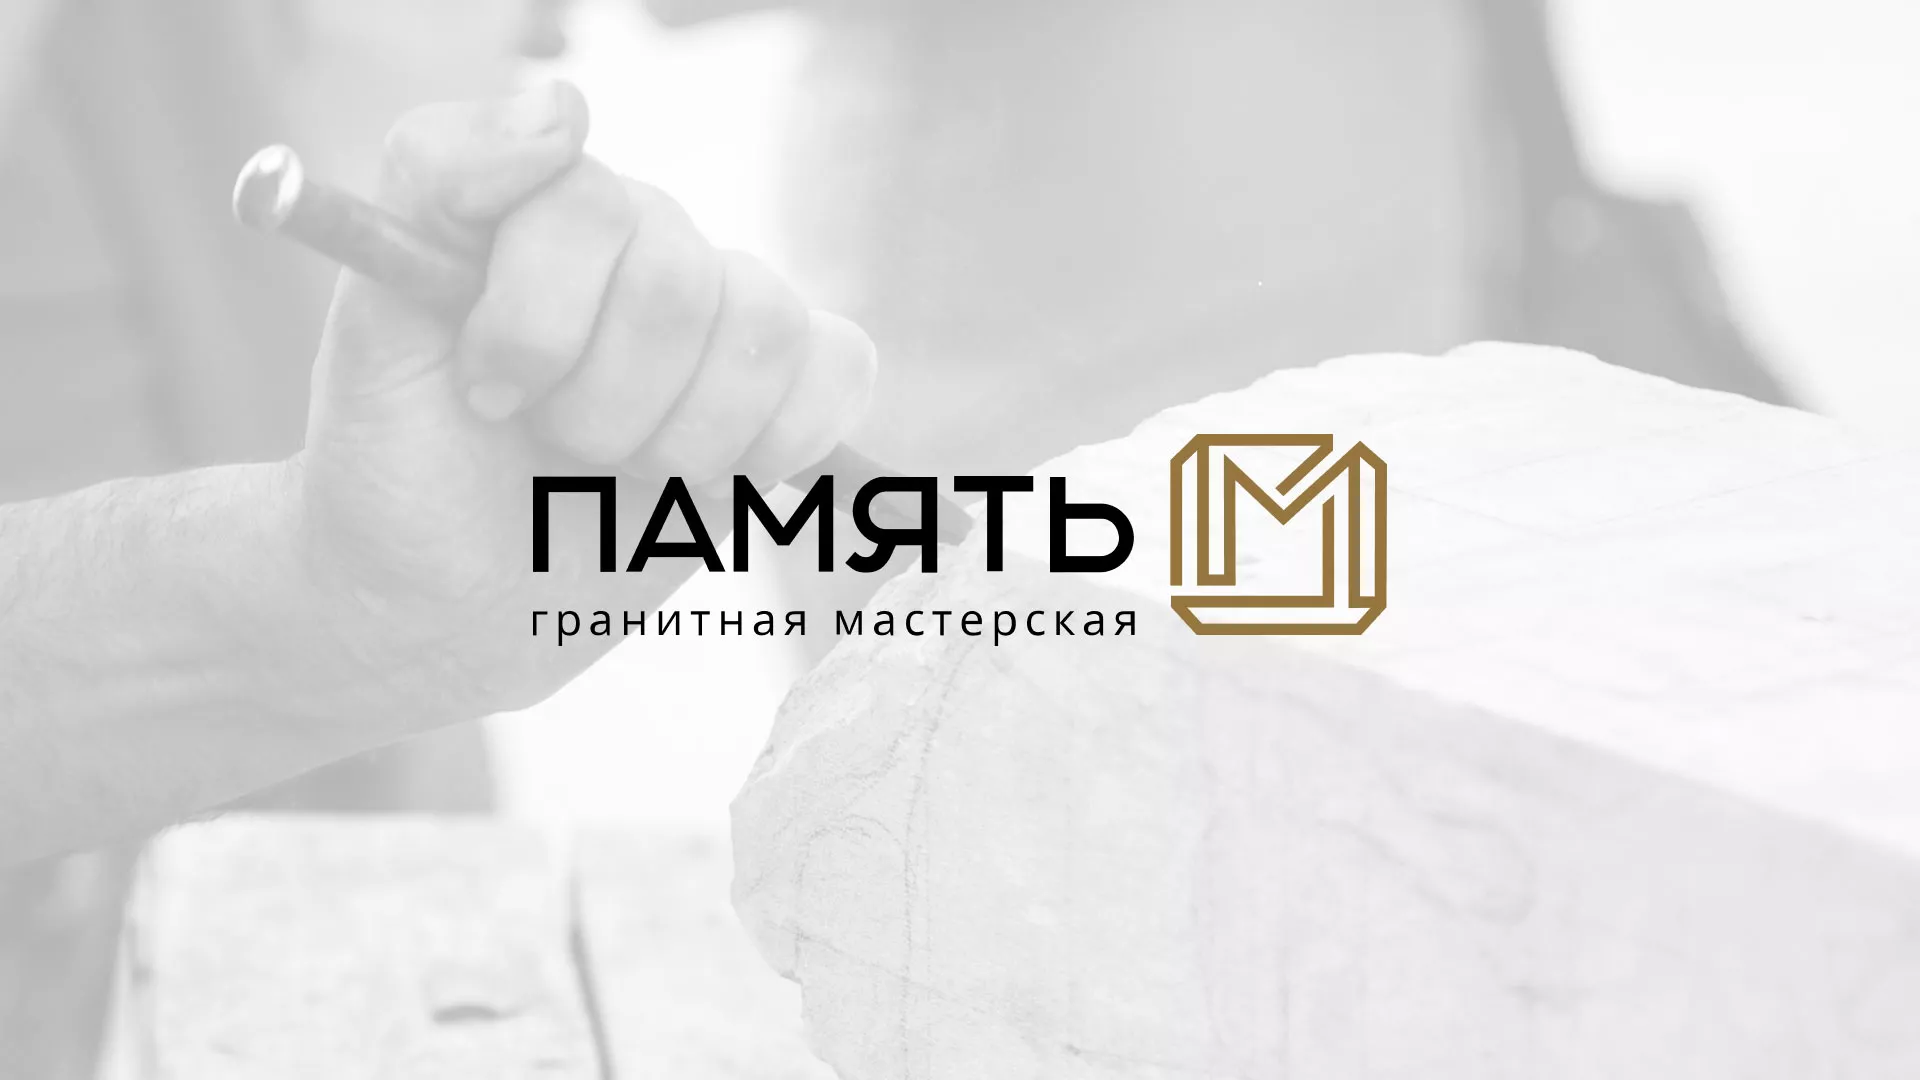 Разработка логотипа и сайта компании «Память-М» в Магадане